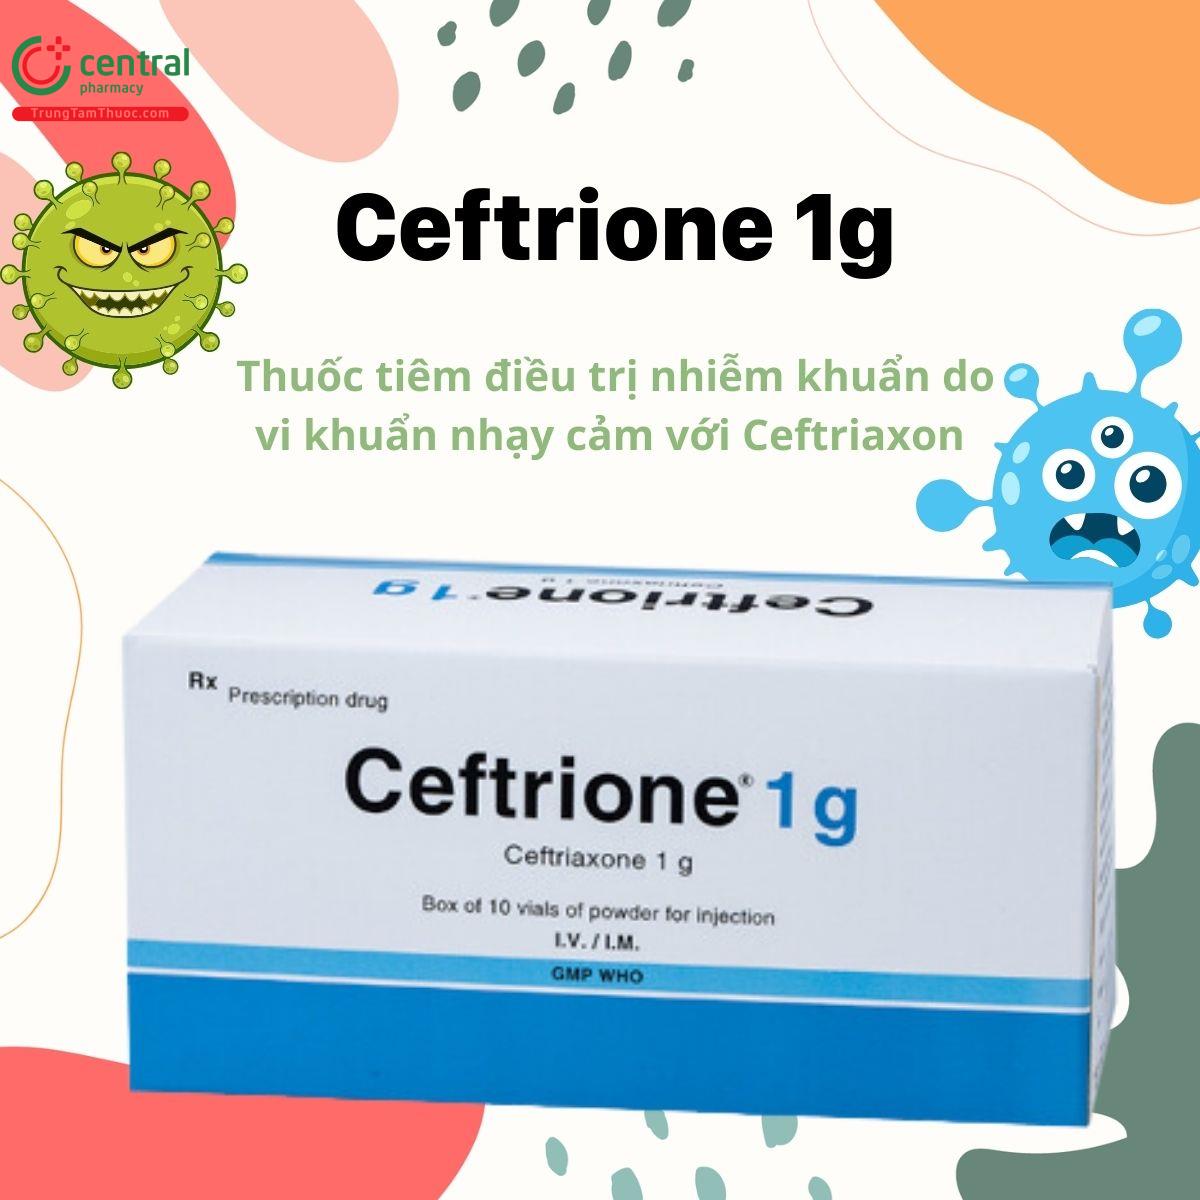 Thuốc Ceftrione 1g điều trị nhiễm khuẩn cho người lớn và trẻ em